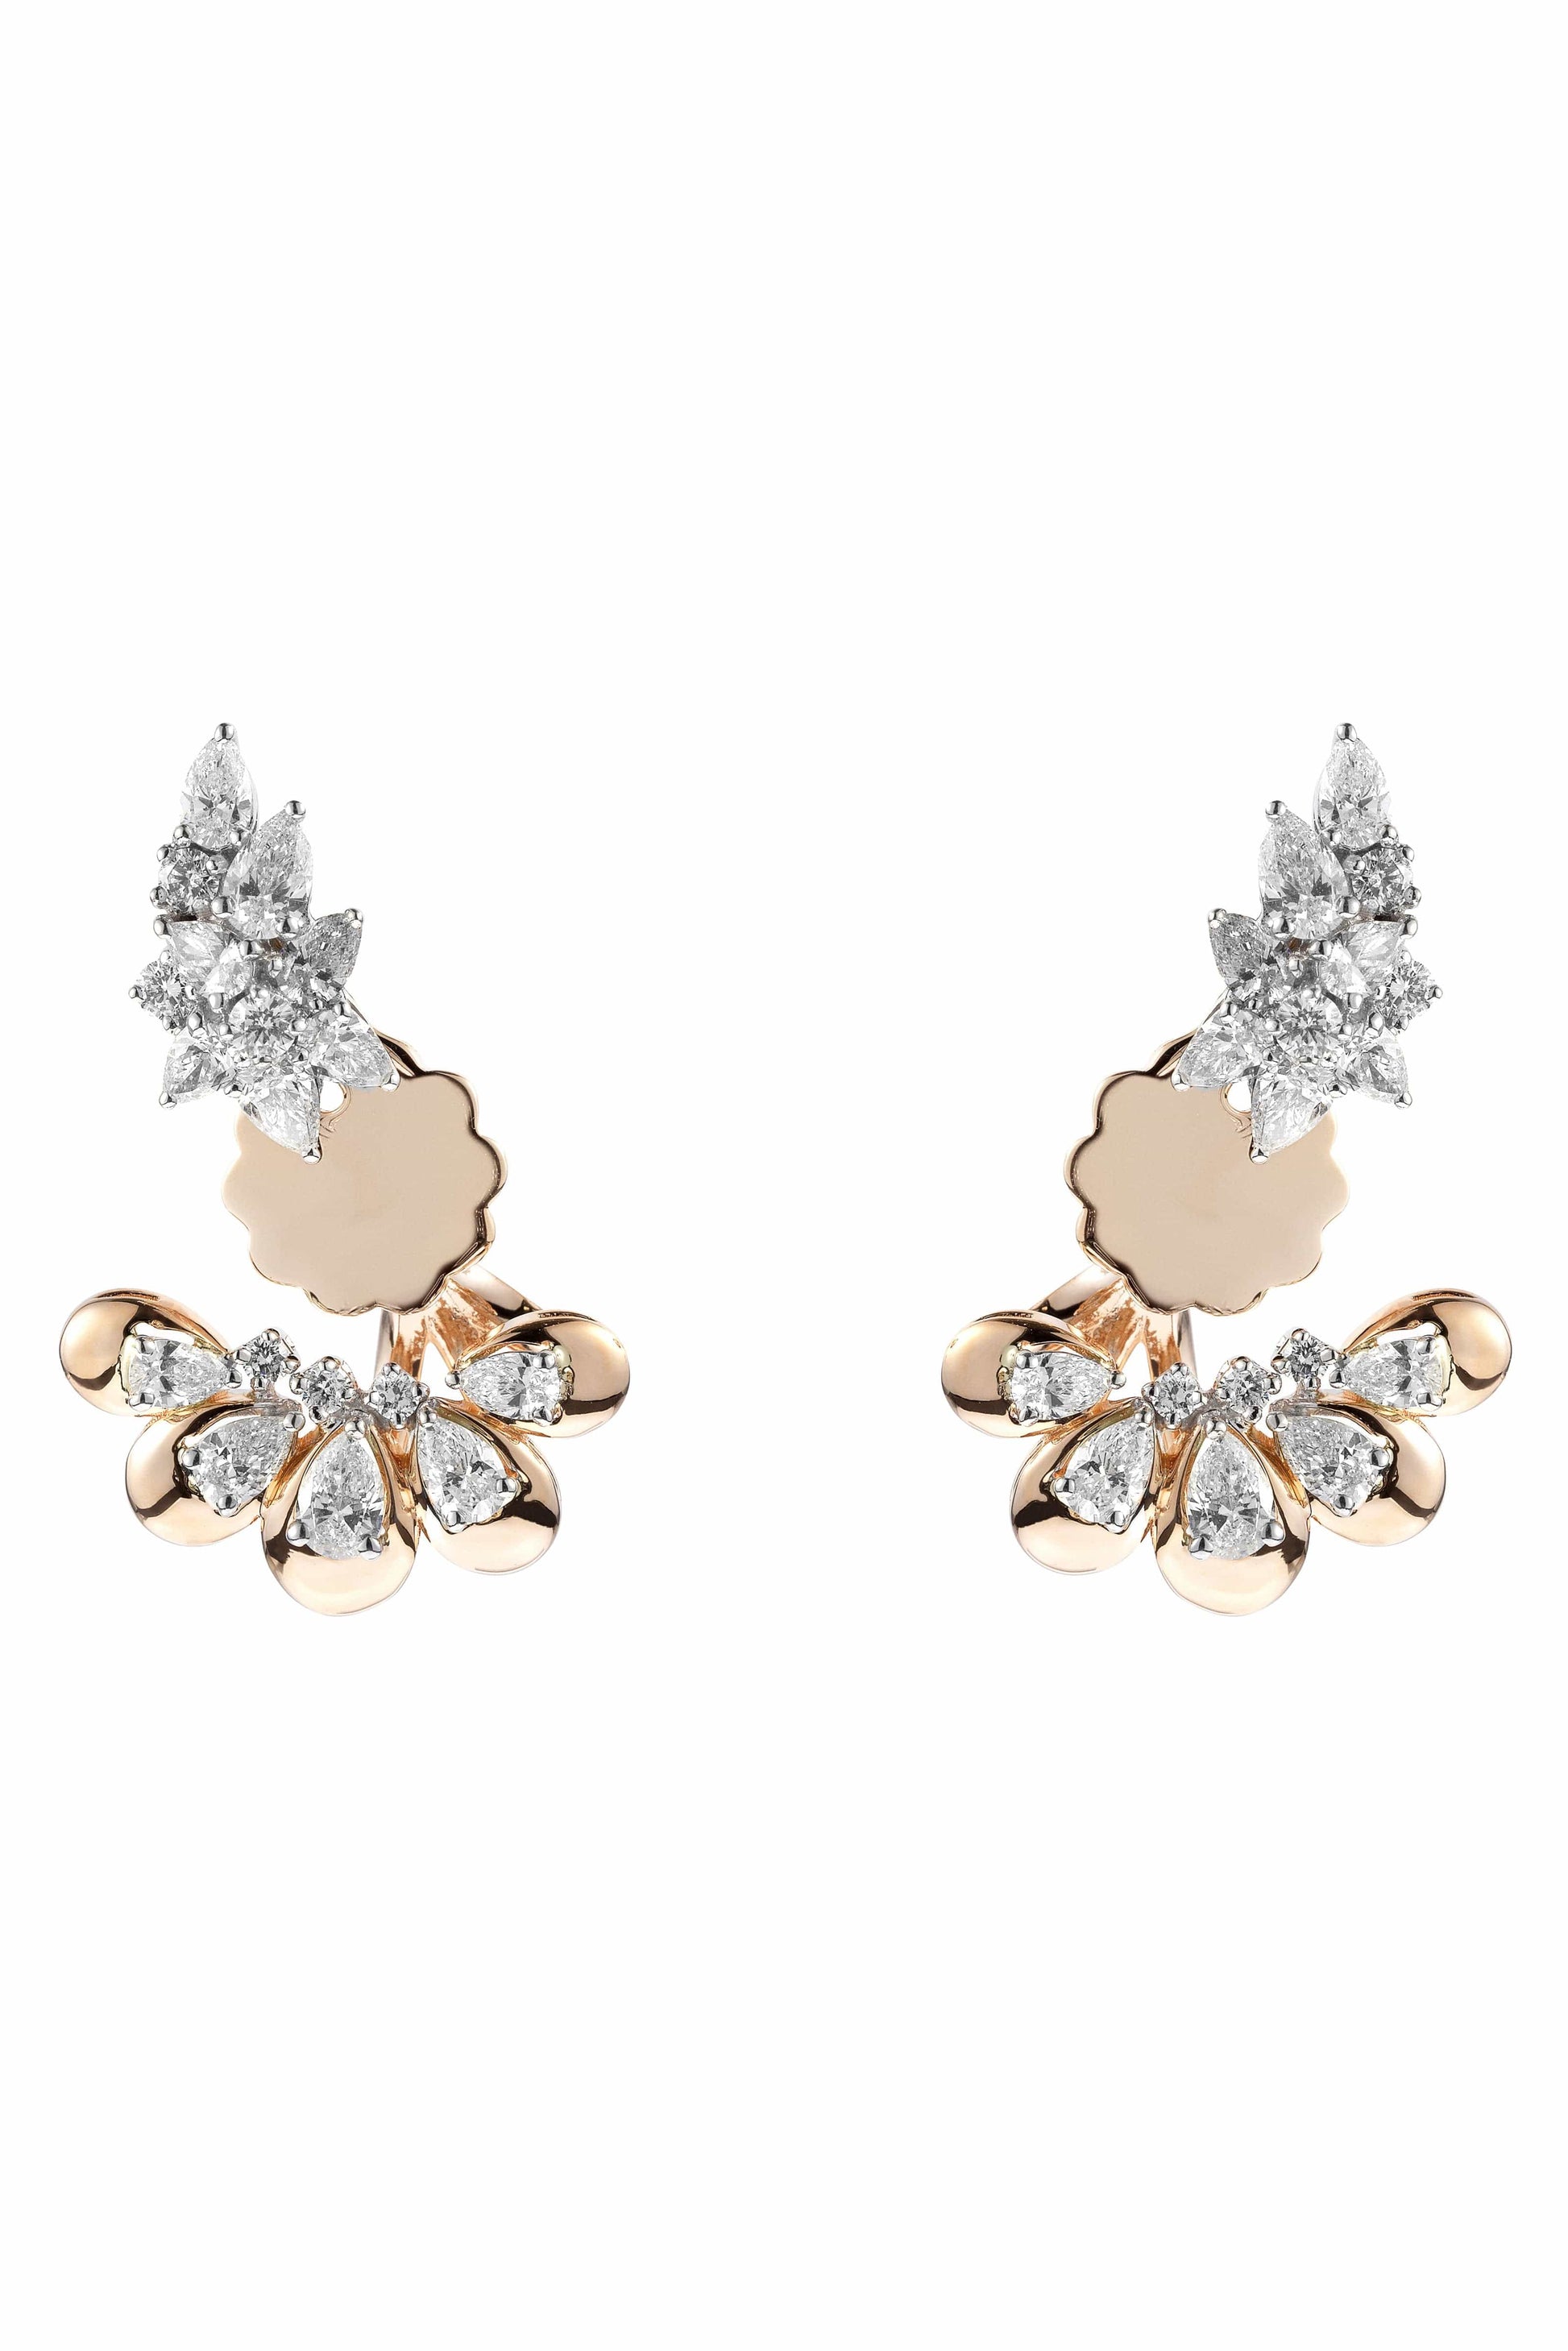 YEPREM JEWELLERY-Diamond Pear Fan Earrings-WHITE GOLD